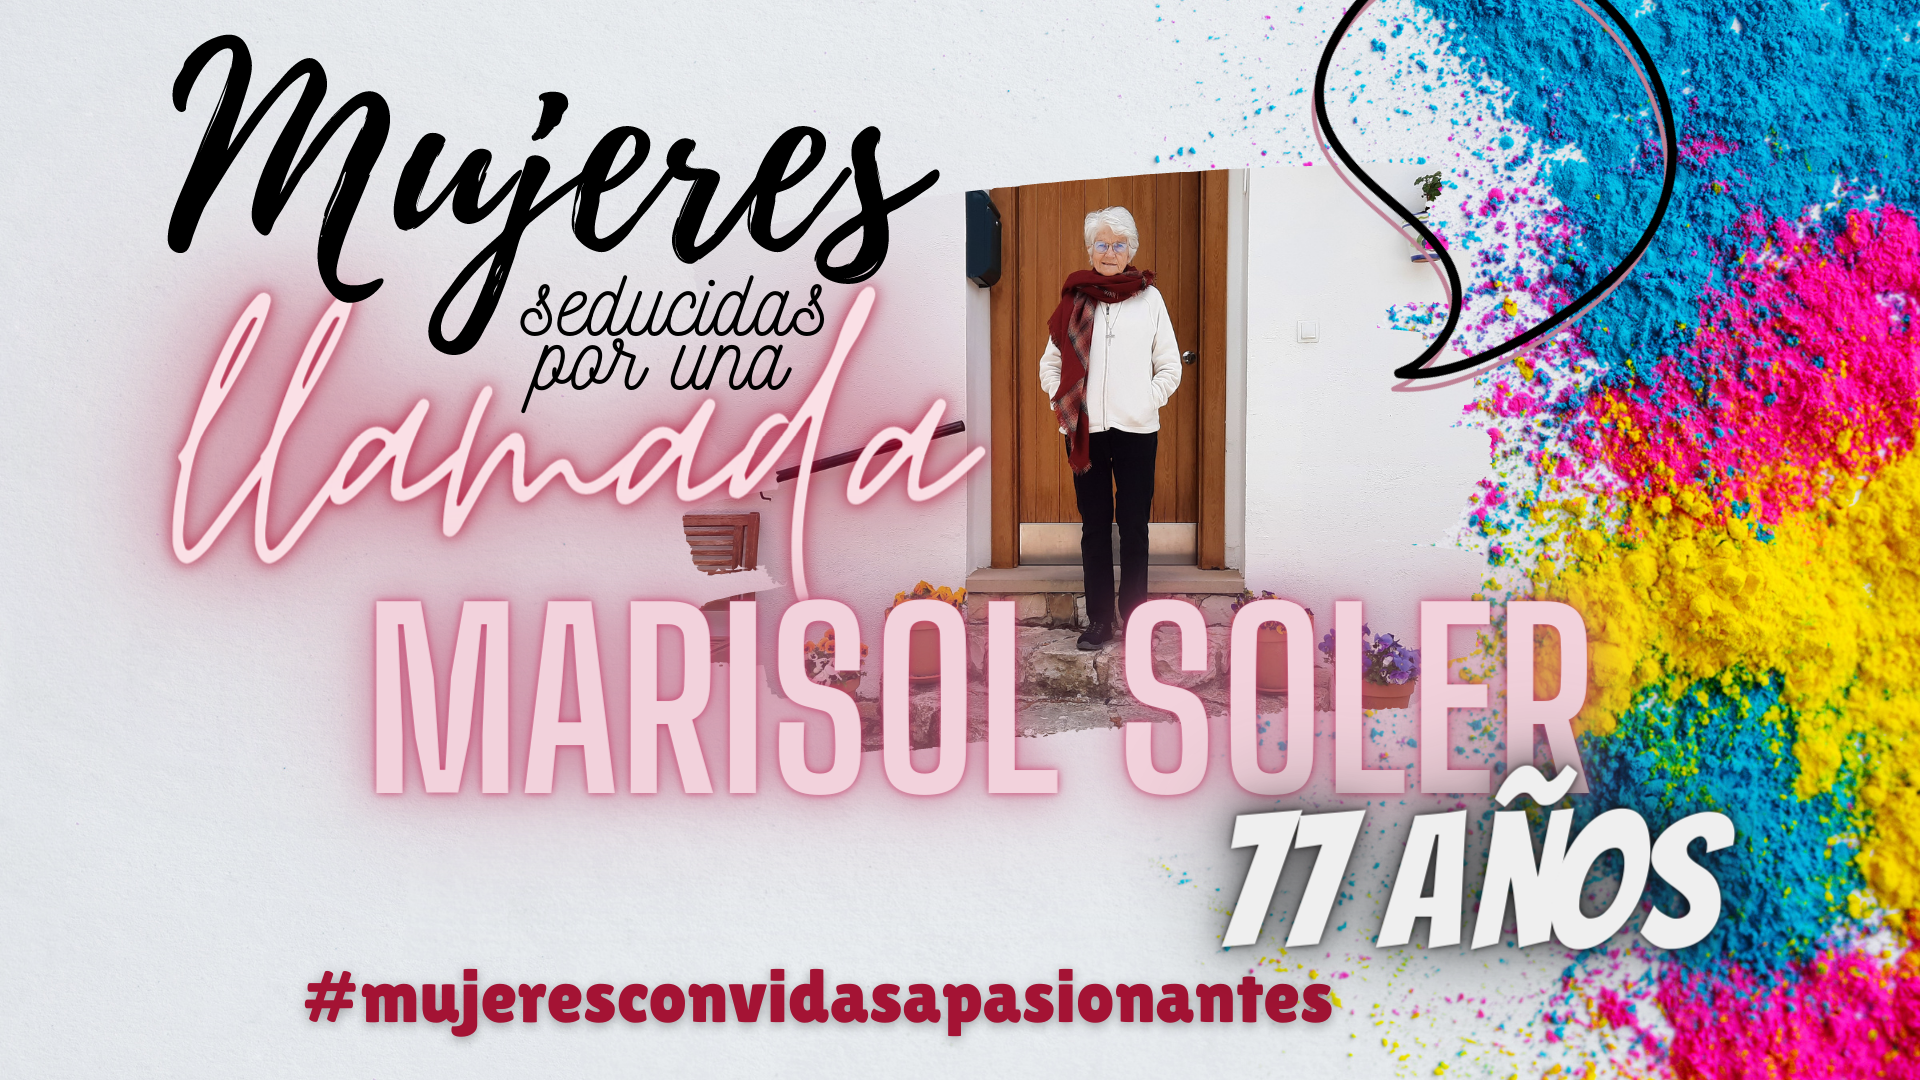 Mujeres con vidas apasionantes Marisol Soler